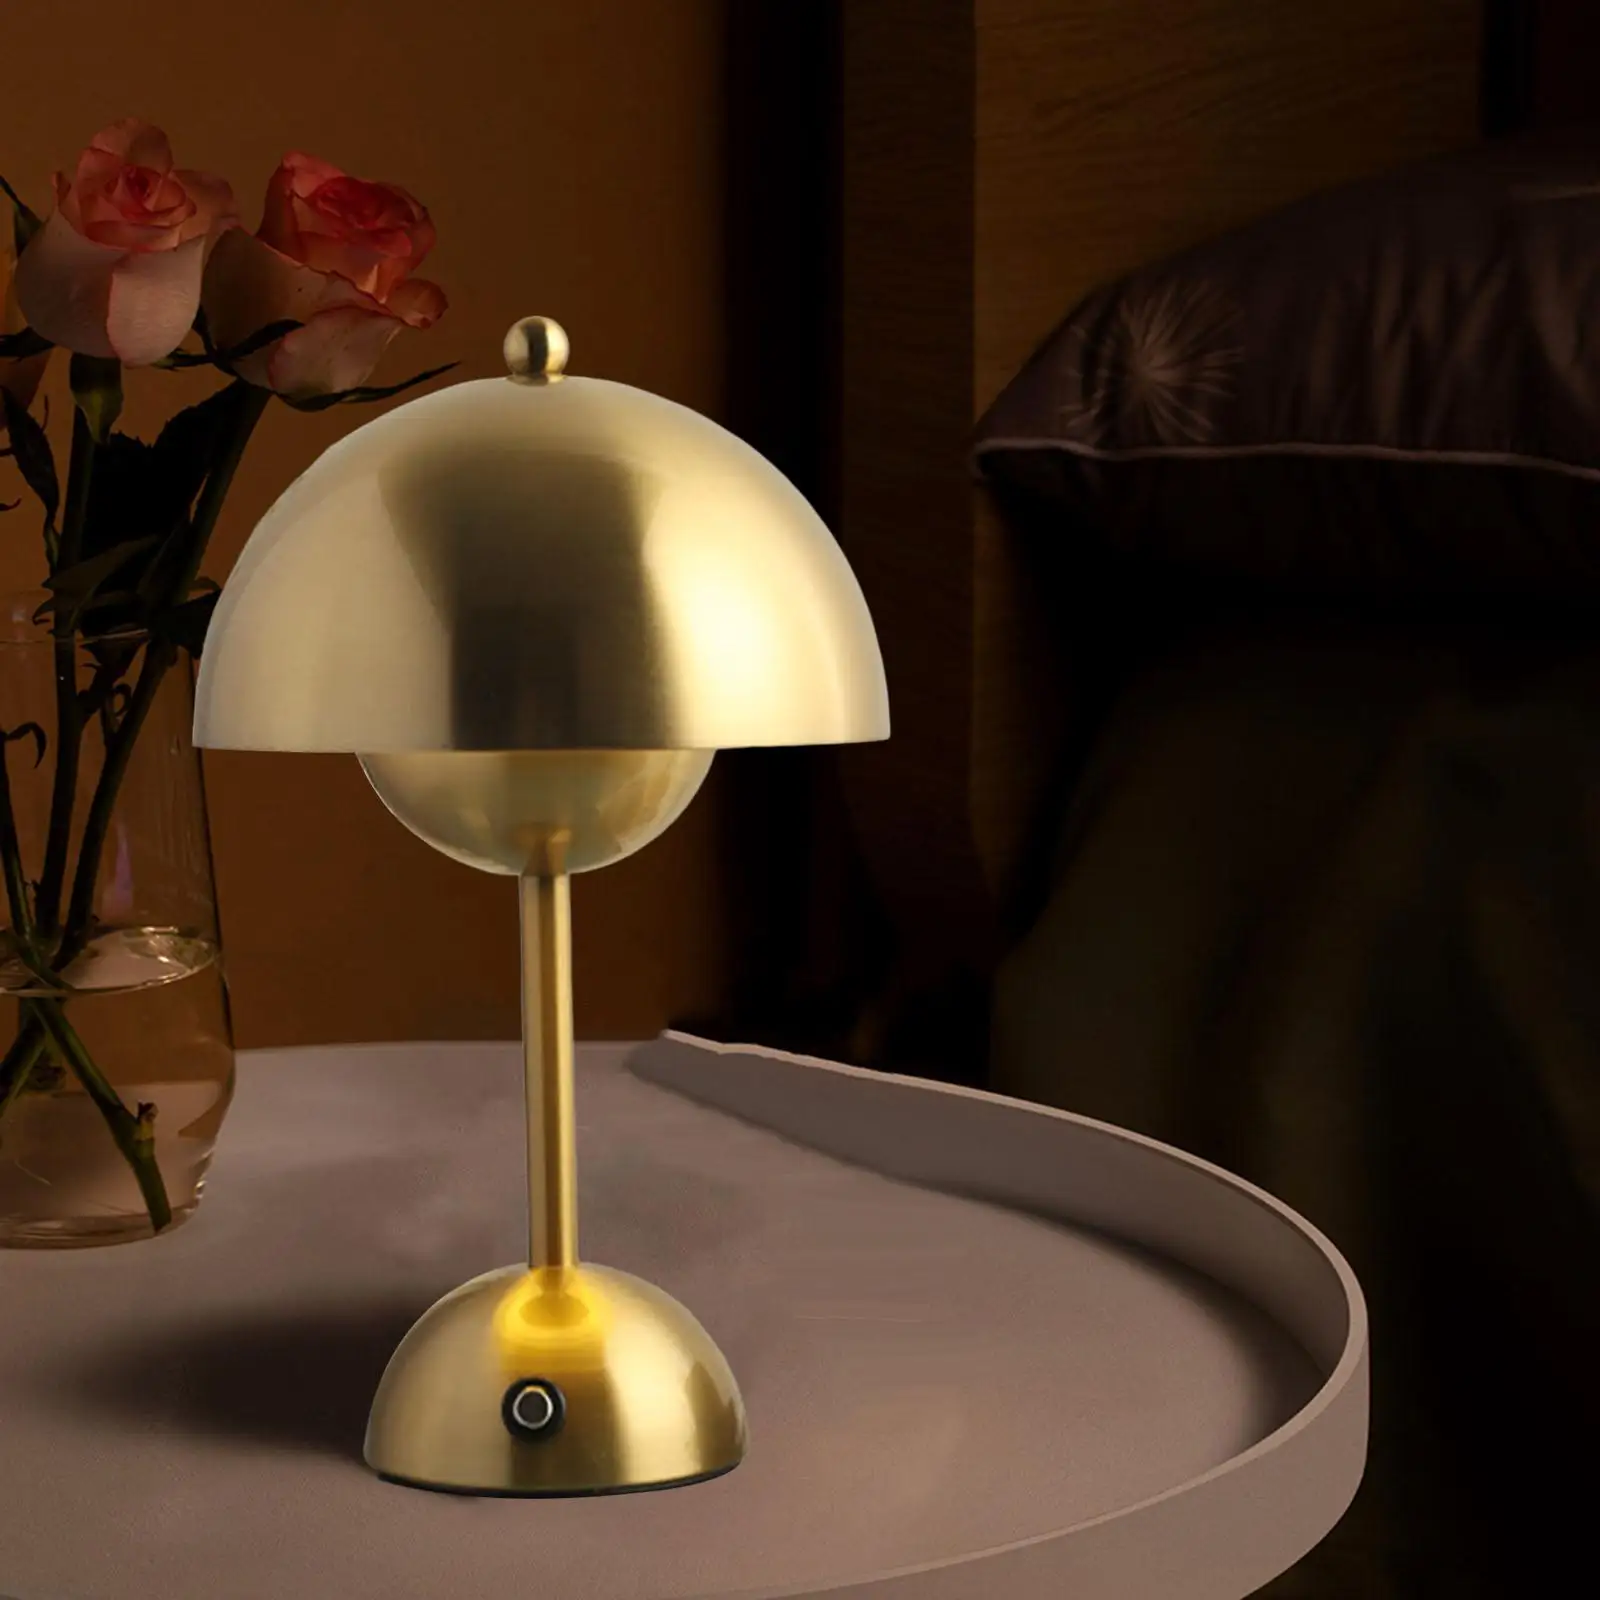 USB Mushroom Bud Lamp Lamp LED Ornament Study for Restaurant Living Room